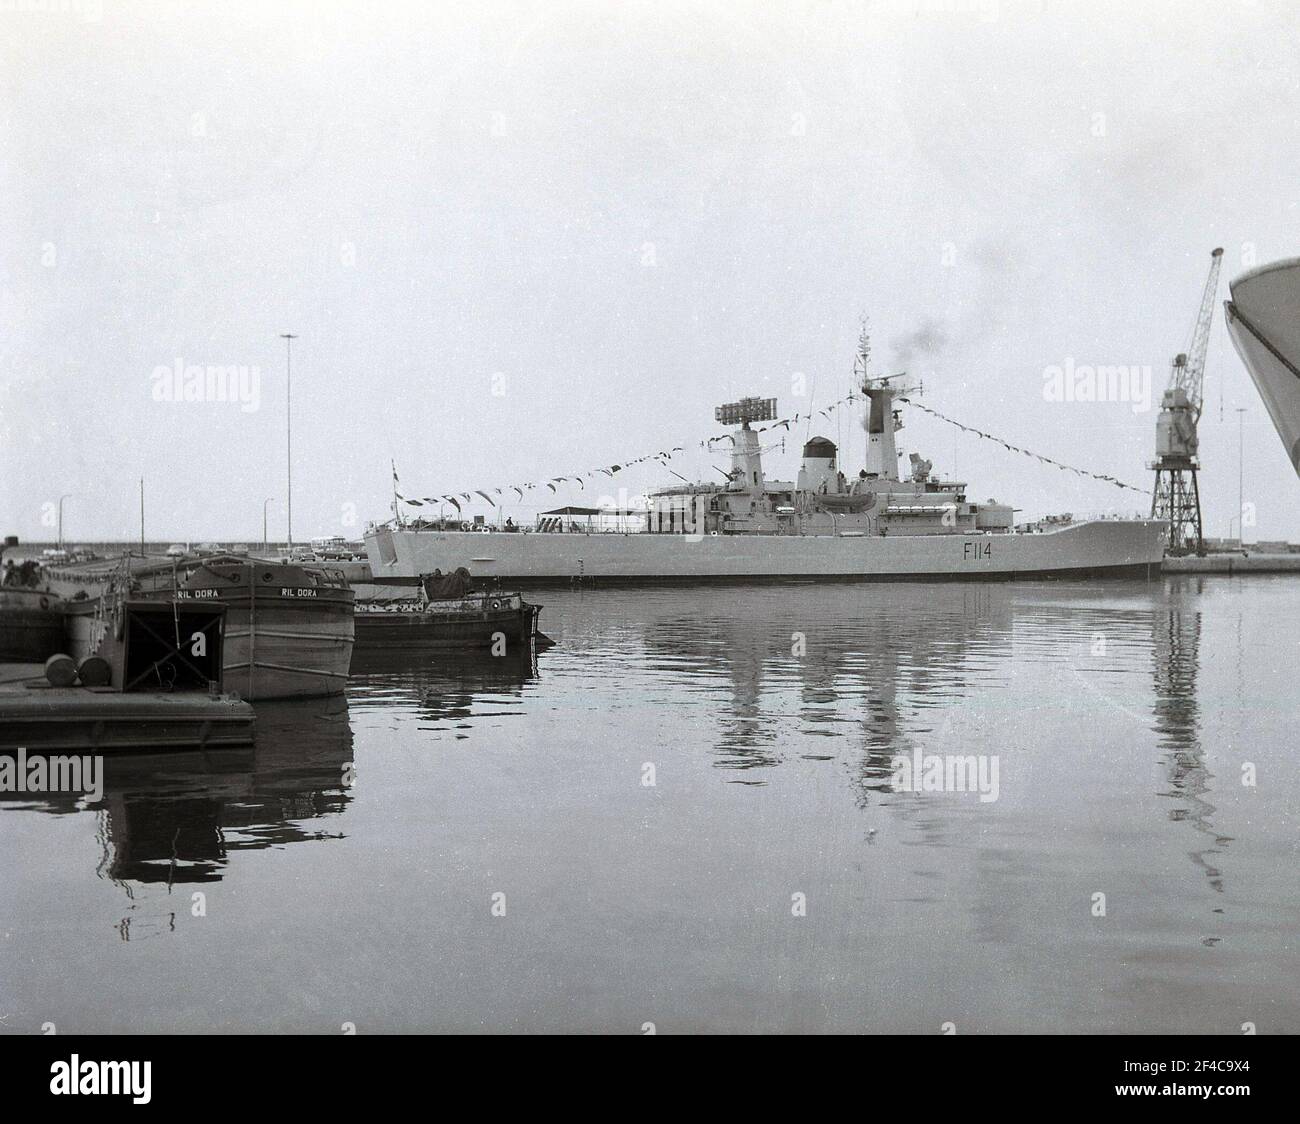 Années 1970, au chantier naval de Devonport, Plymouth, une vue du navire de la Marine royale, le HMS Ajax (F114), une frégate de classe Leander lancée en 1962. Elle a été construite par Cammell Laird de Birkenhead. La classe Leander des frégates de Type12I avait un profil public exceptionnellement élevé. Banque D'Images